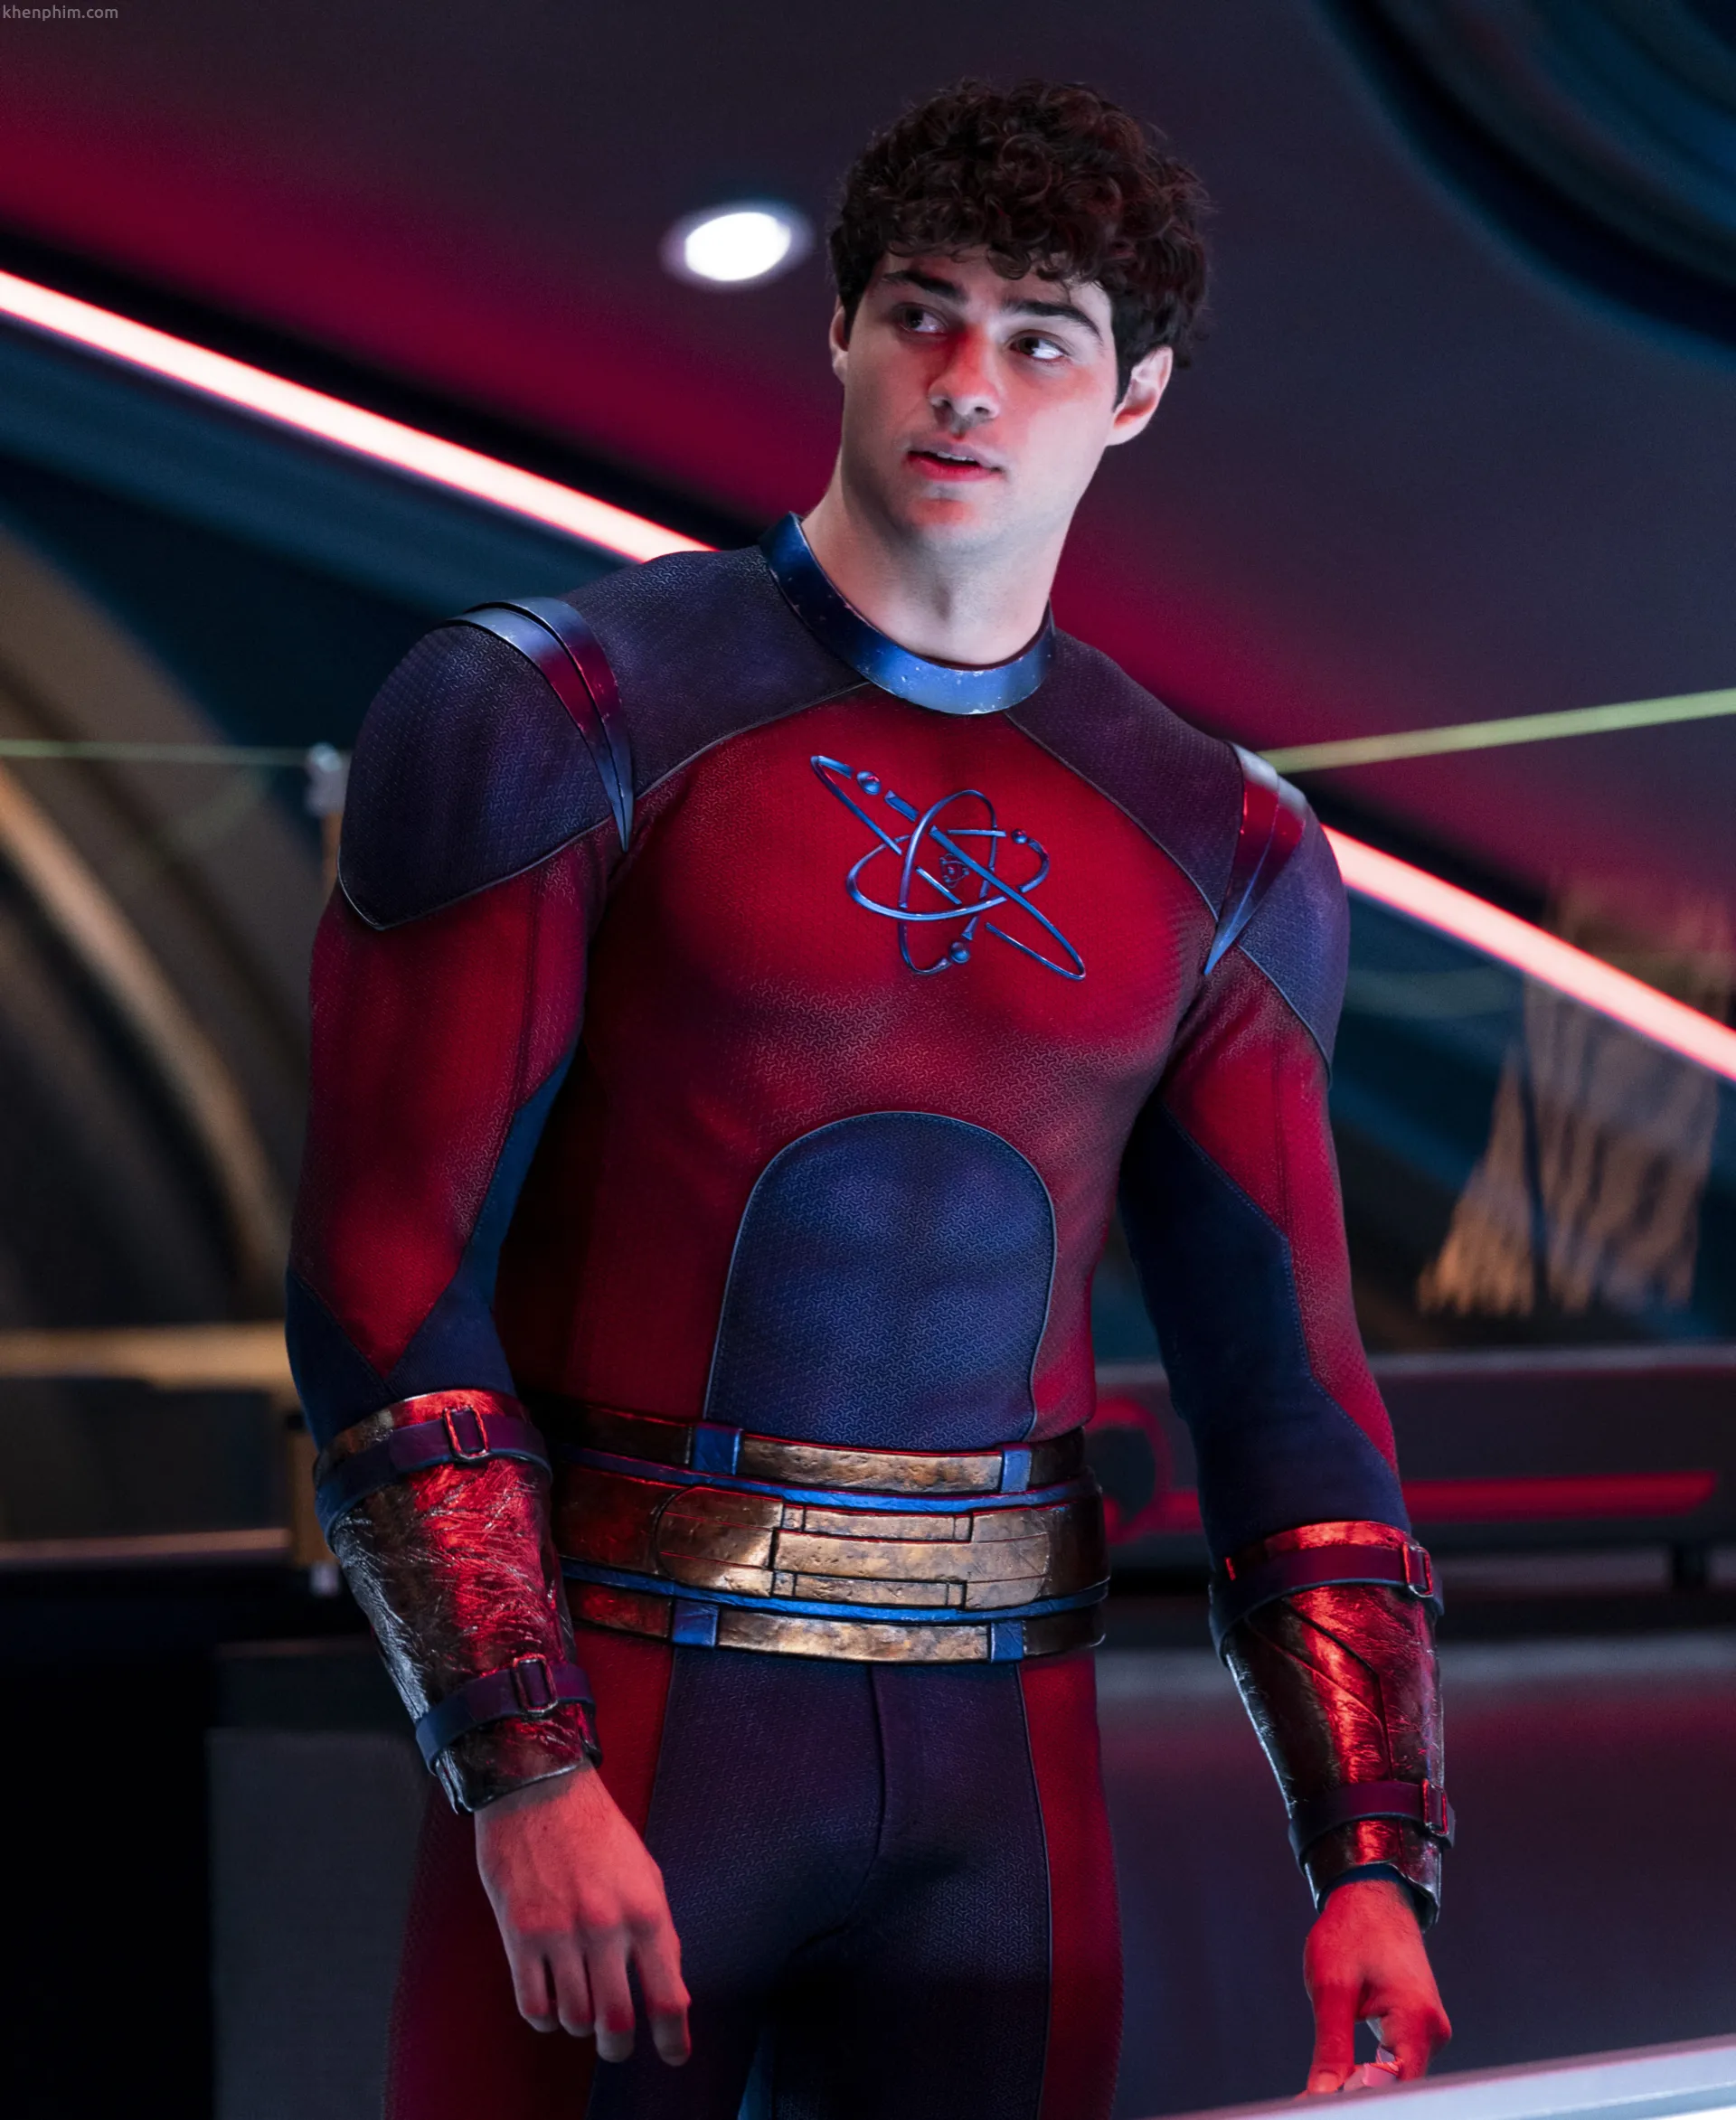 Noah Centineo có bộ đồ đẹp nhưng hơi giống Spider-Man - phim Black Adam